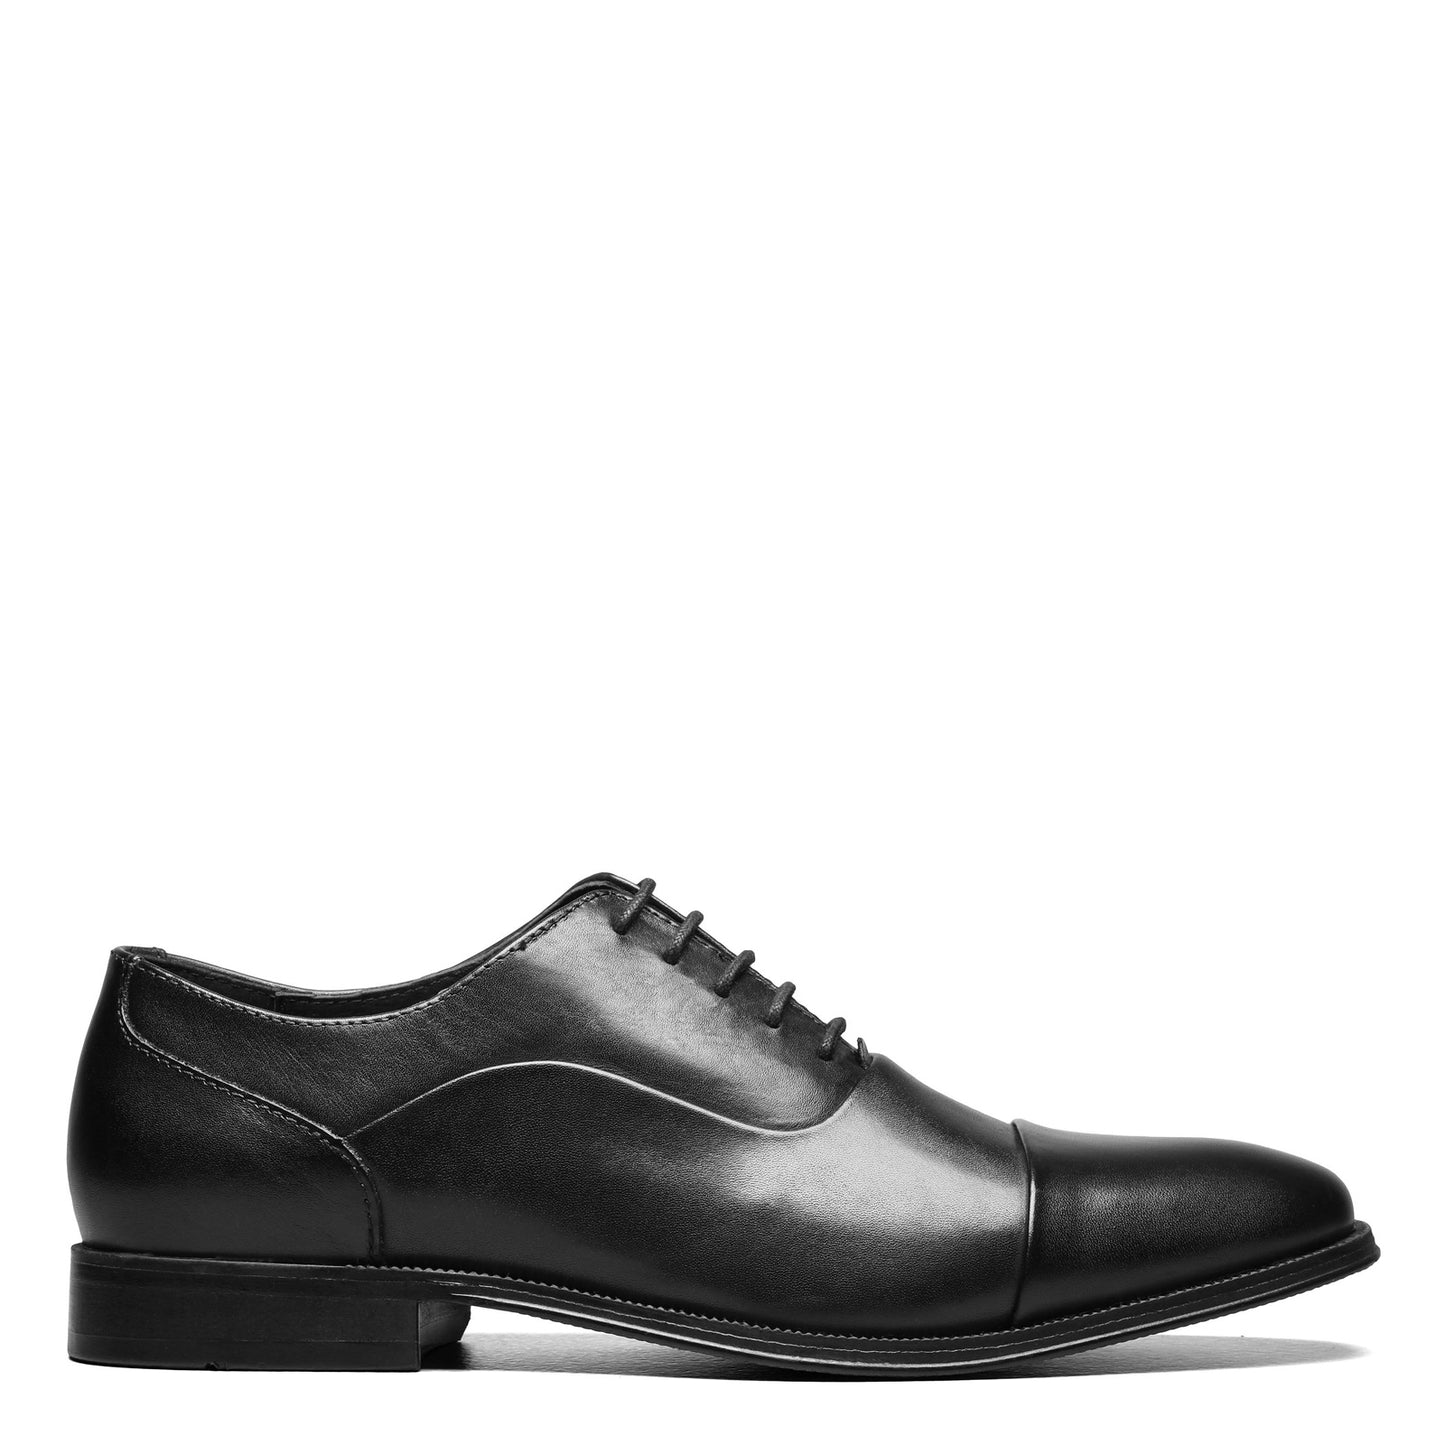 Peltz Shoes  Men's Florsheim Jetson Cap Toe Oxford BLACK 14250-001